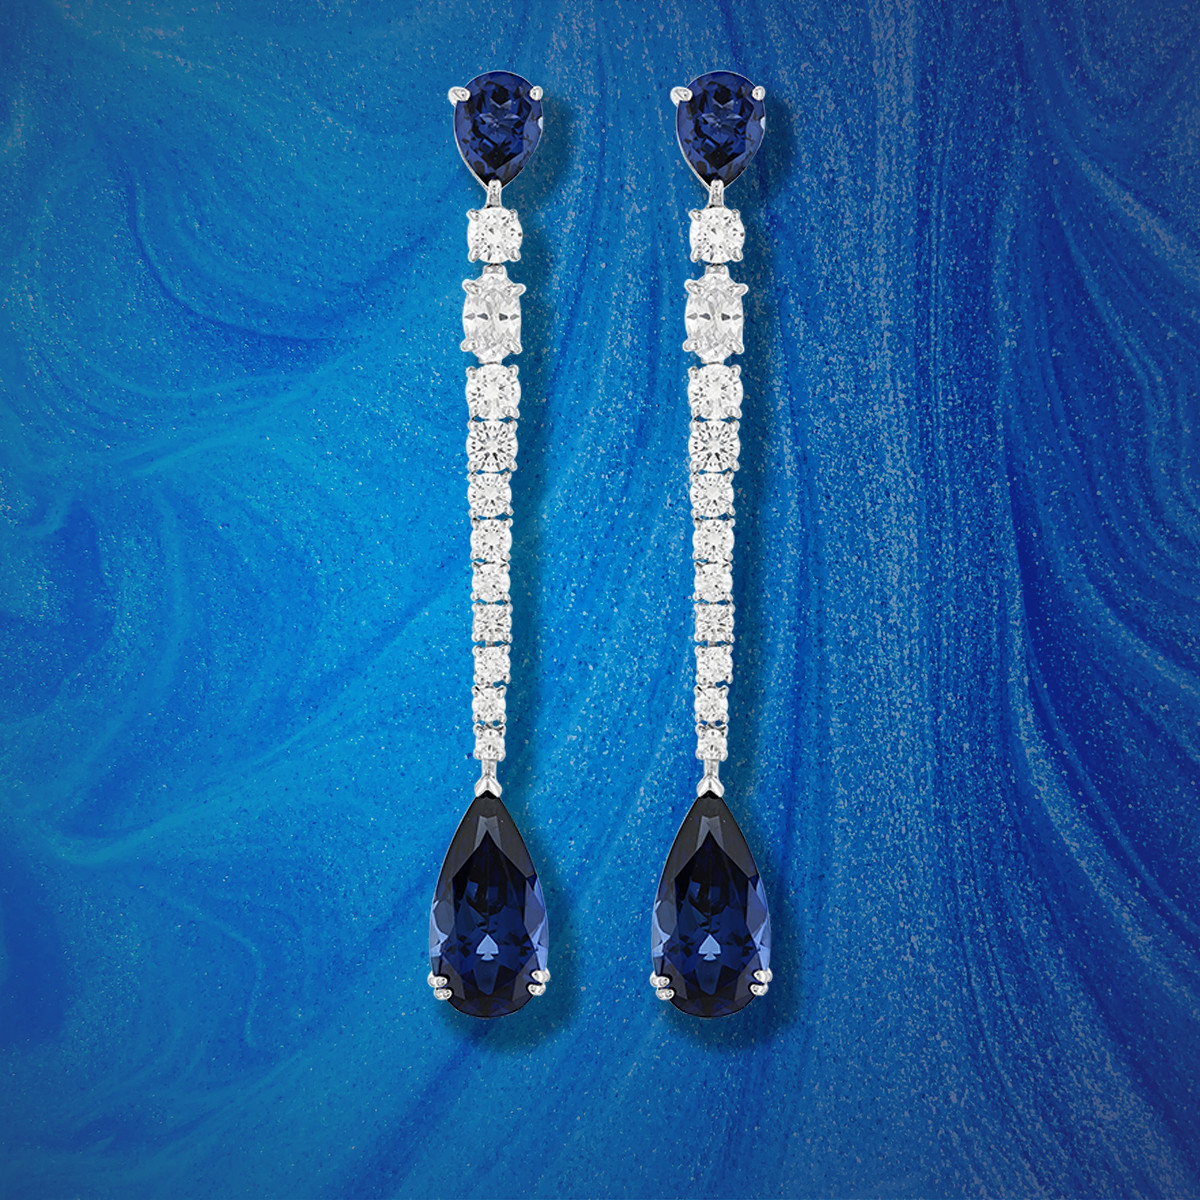 Boucles d'oreilles pendants argent 925, pierres synthétiques bleues zirconias - vue D1